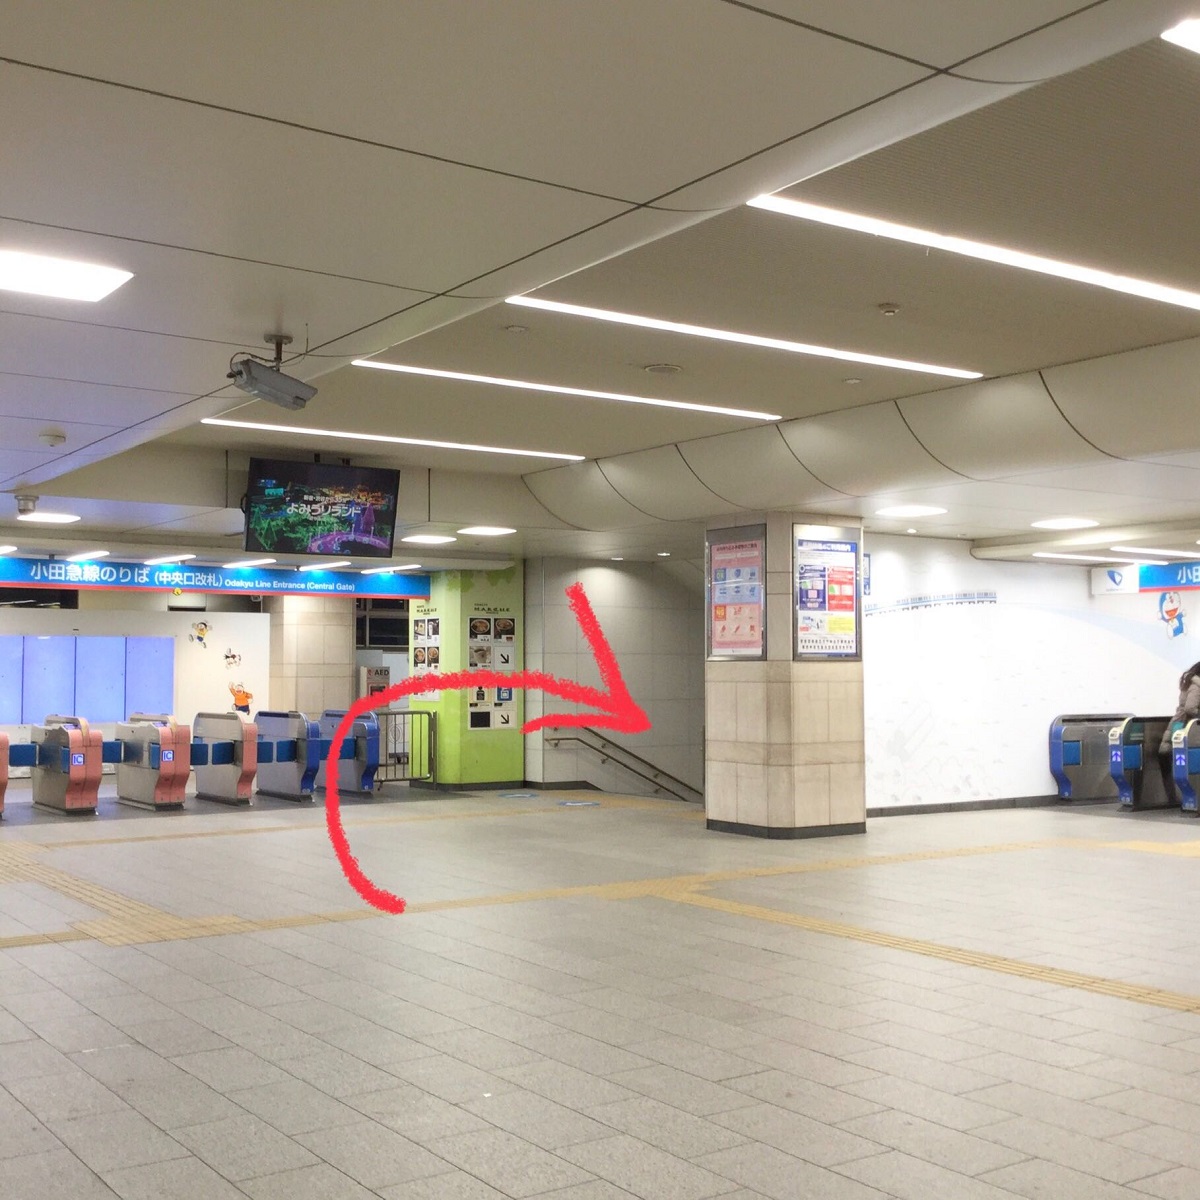 アイカサ 小田急線 登戸駅 中央改札 ロッカー横 登戸 傘 Goo地図